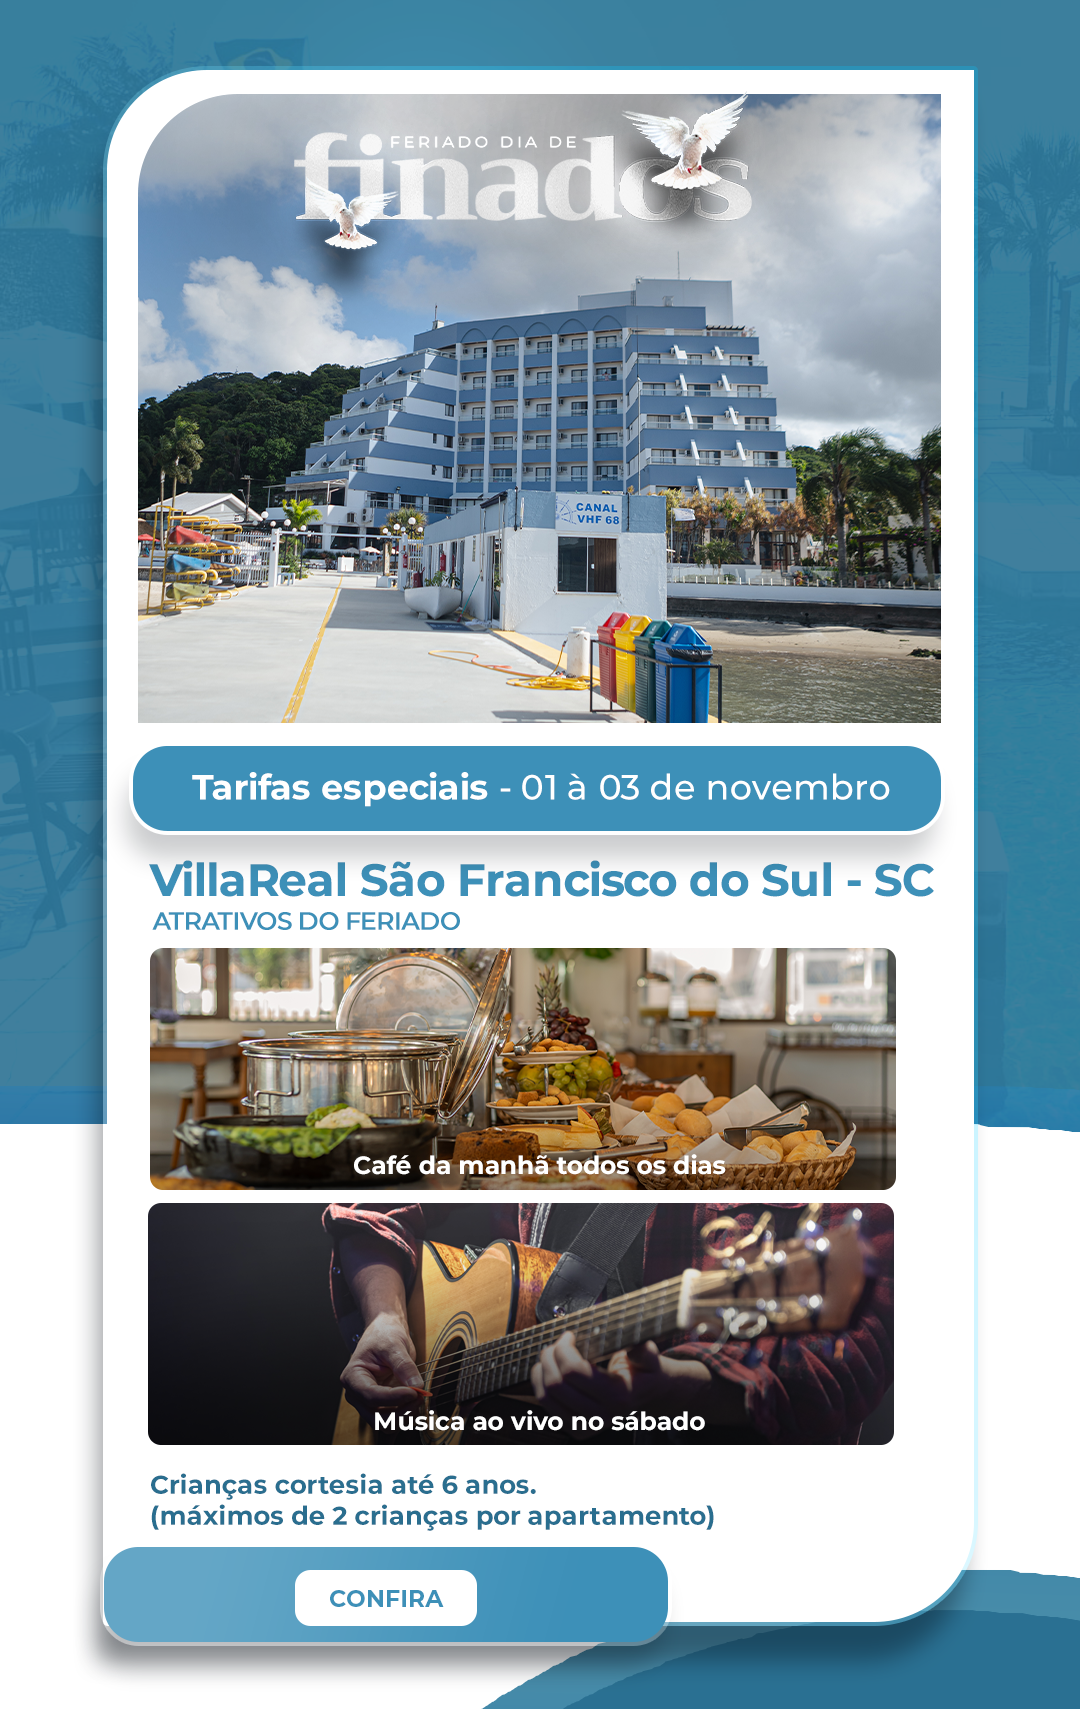 Tarifas especiais para o feriado de Dia de Finados nos hotéis villareal em Guaratuba e São Francisco do Sul